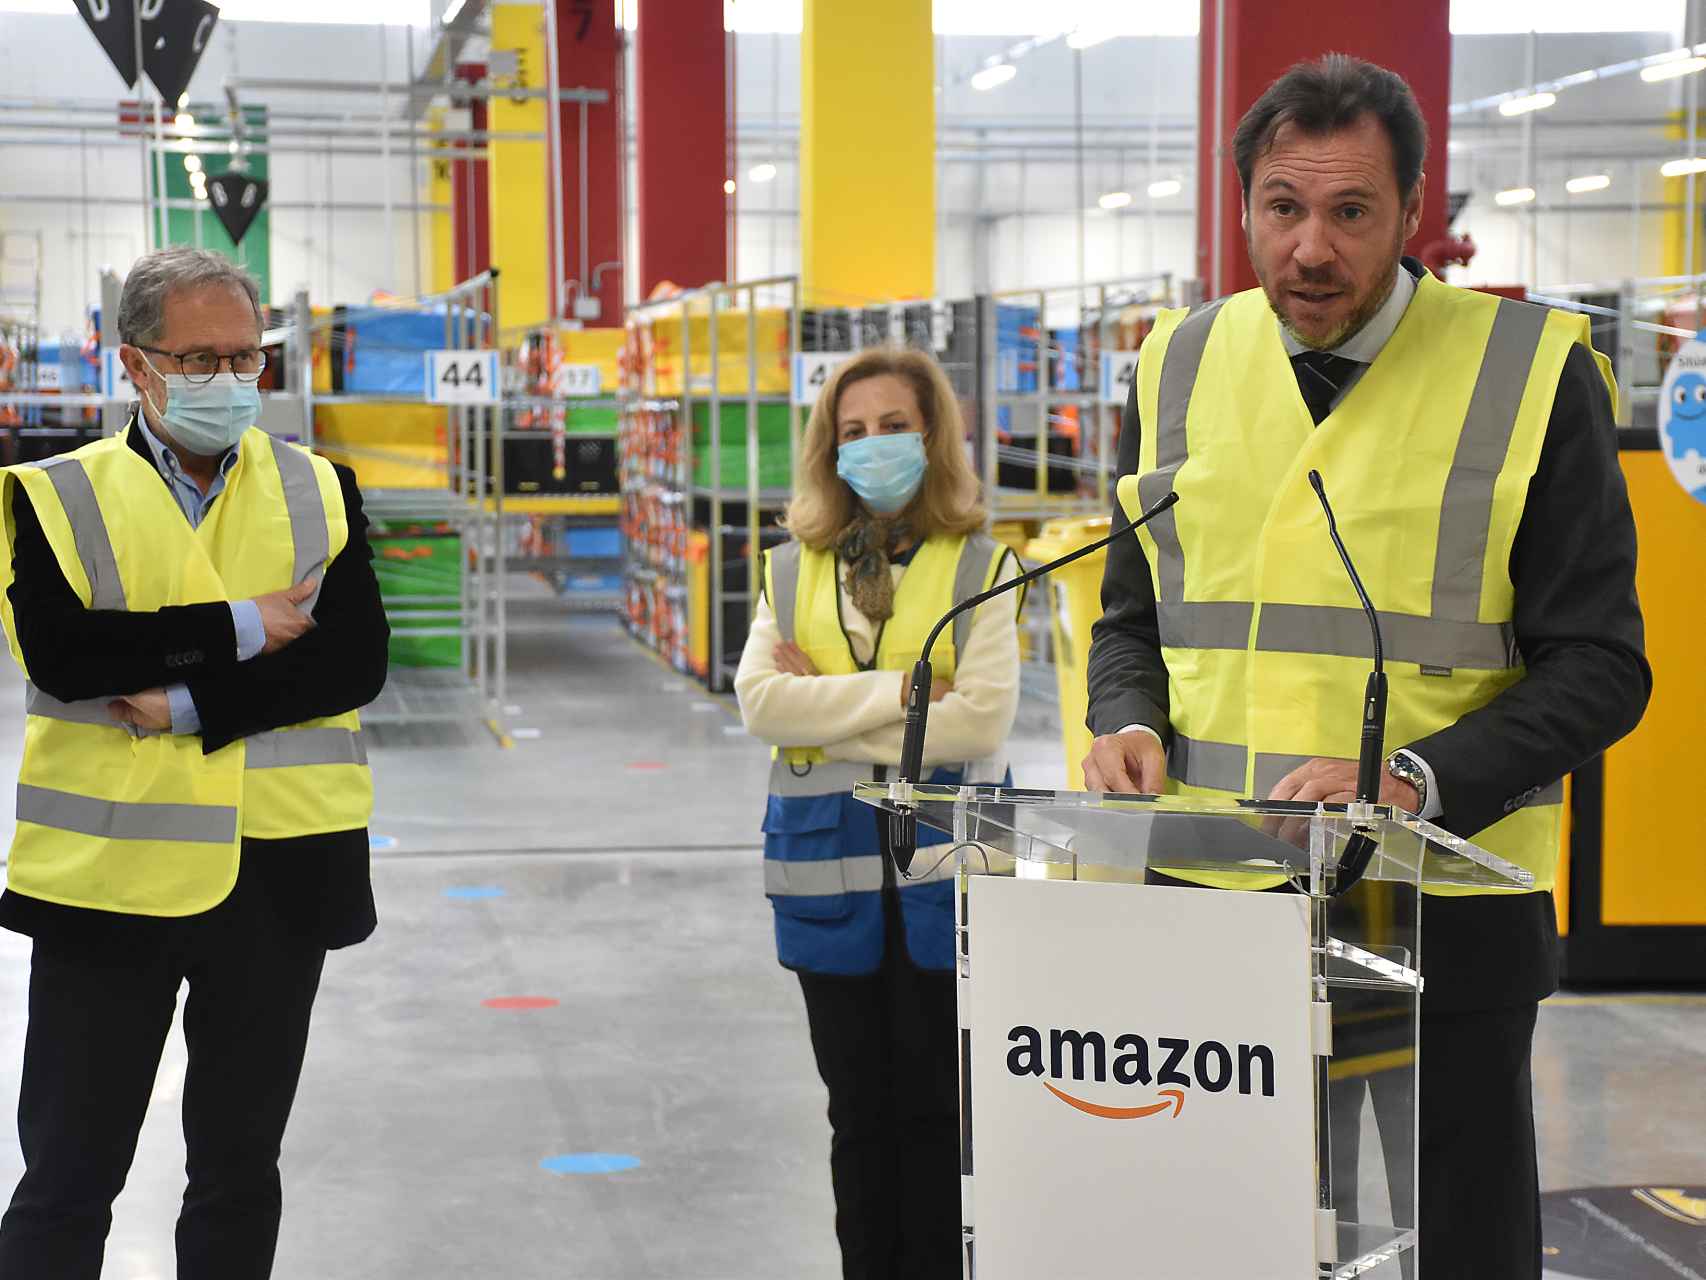 Óscar Puente valora positivamente la instalación de Amazon en Valladolid